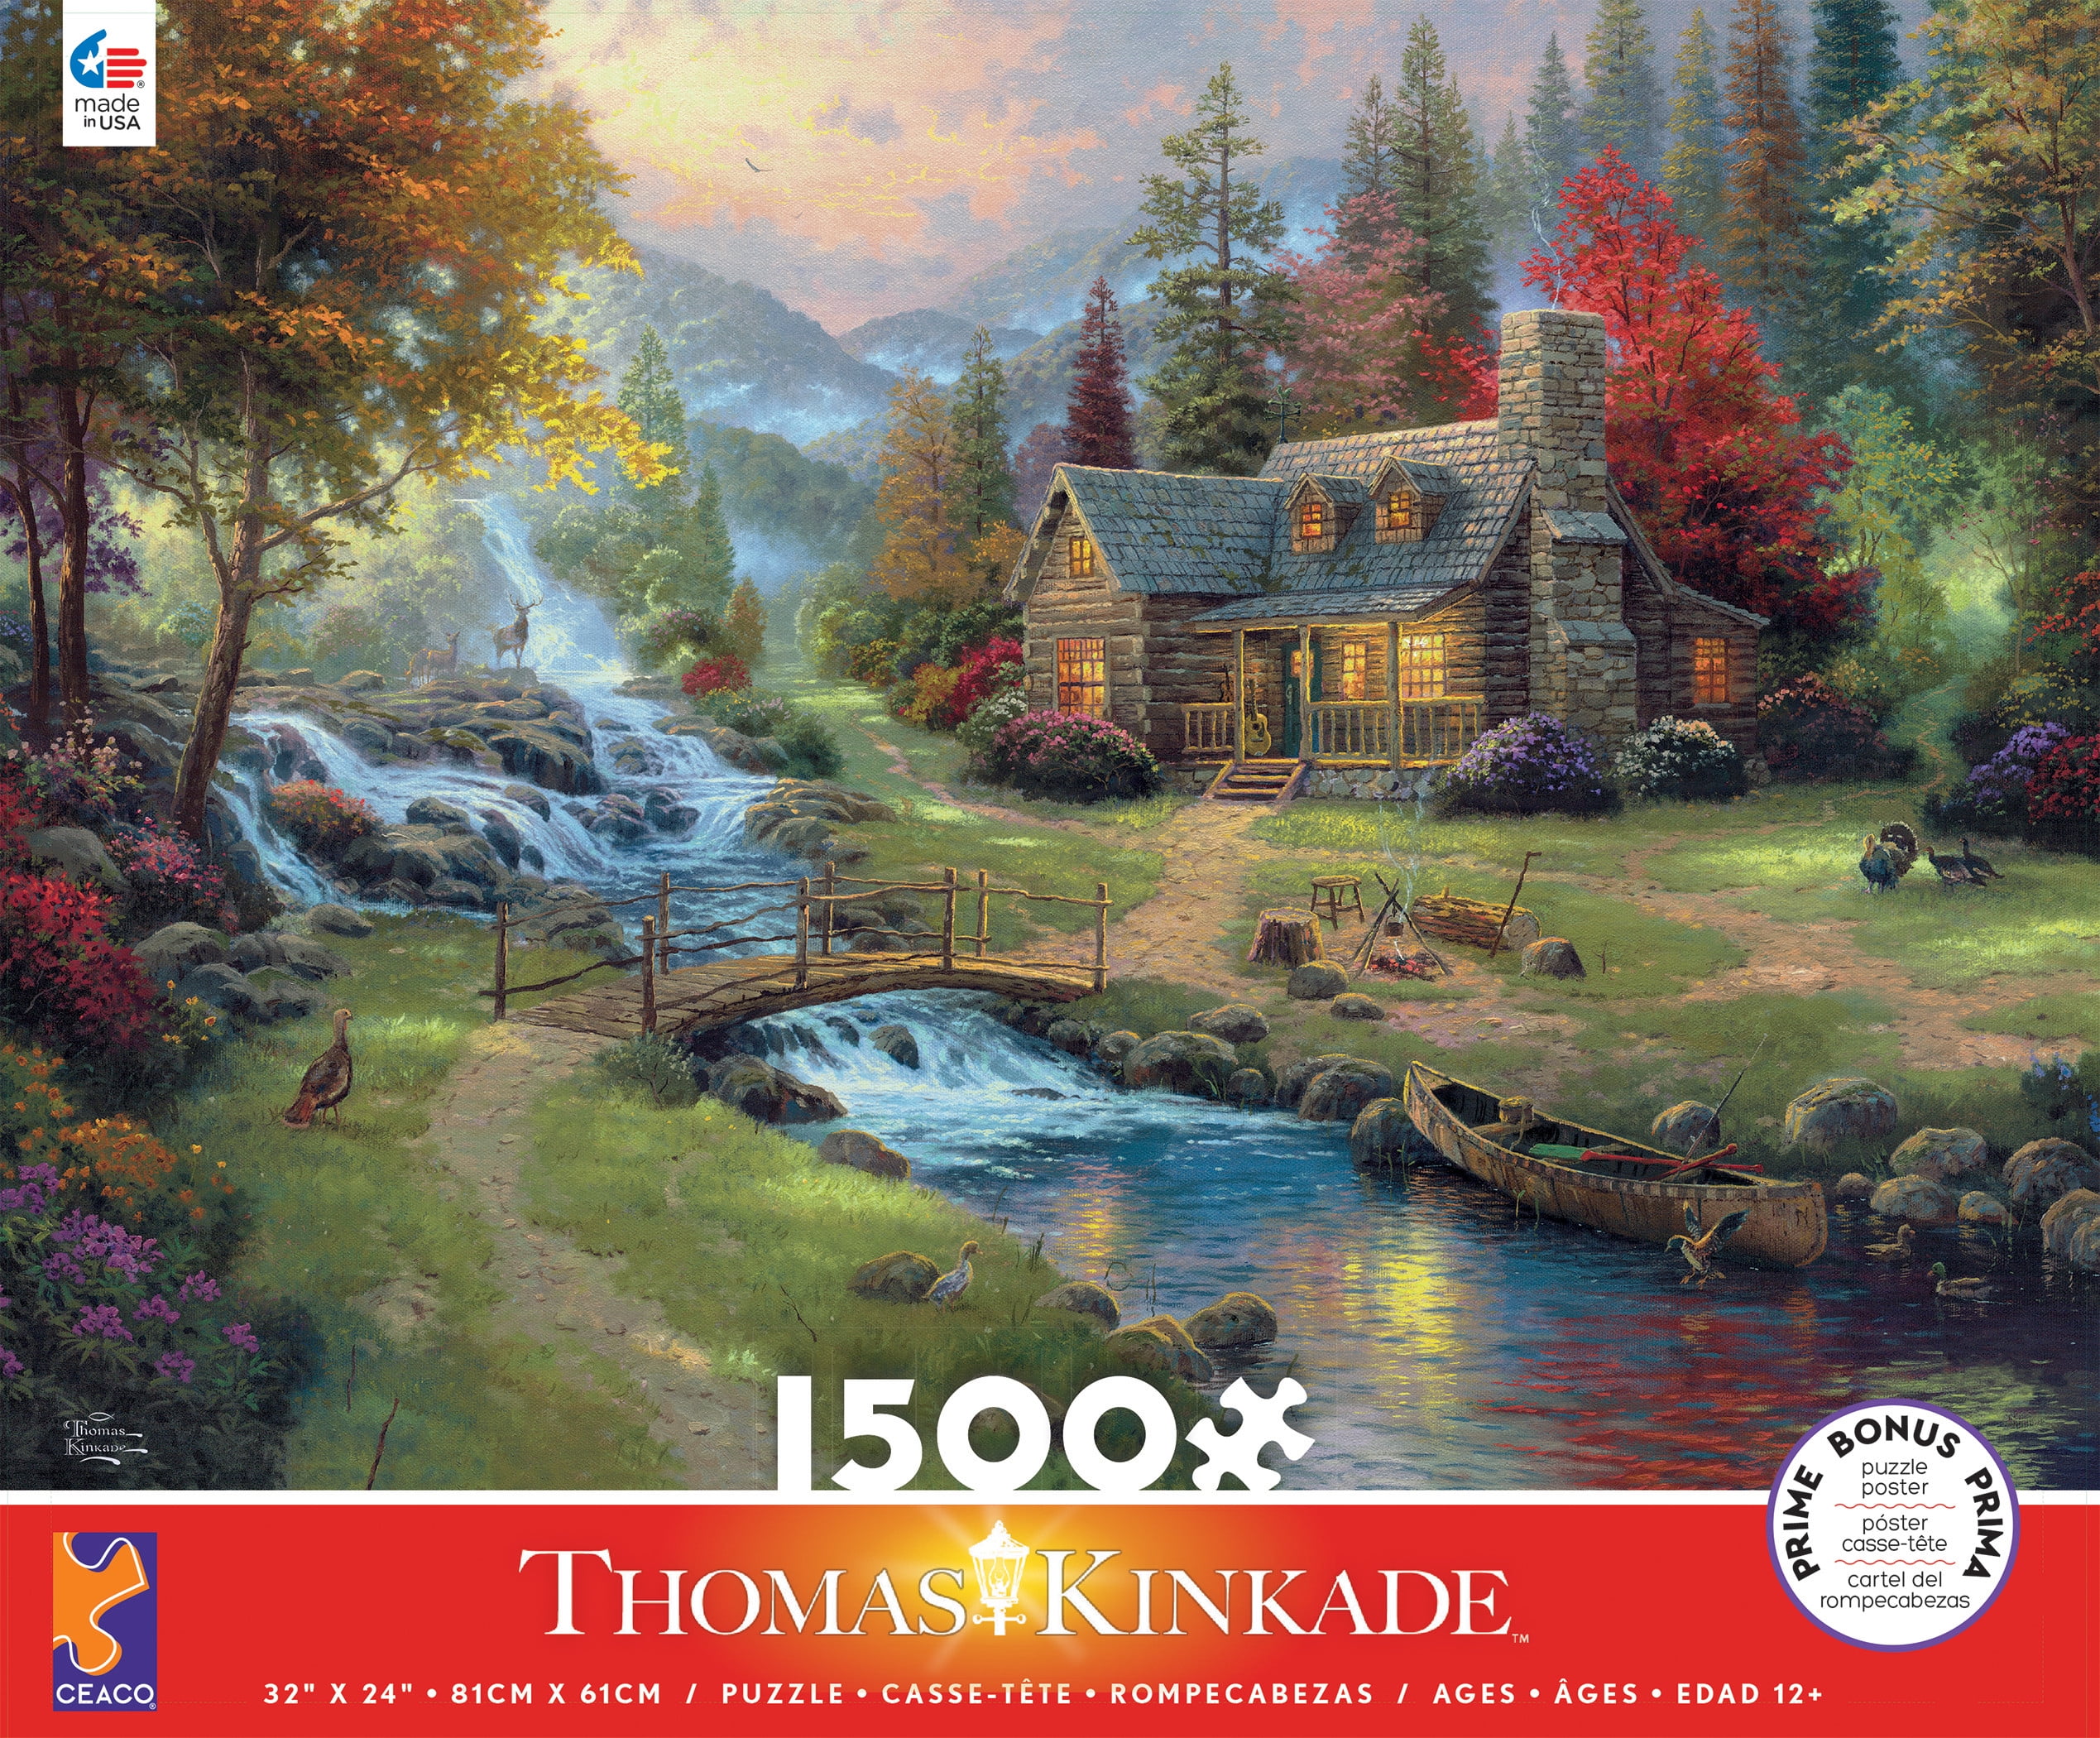 CEACO THOMAS KINKADE JIGSAW PUZZLE MOUNTAIN PARADISE 1000 PCS #3310-76 